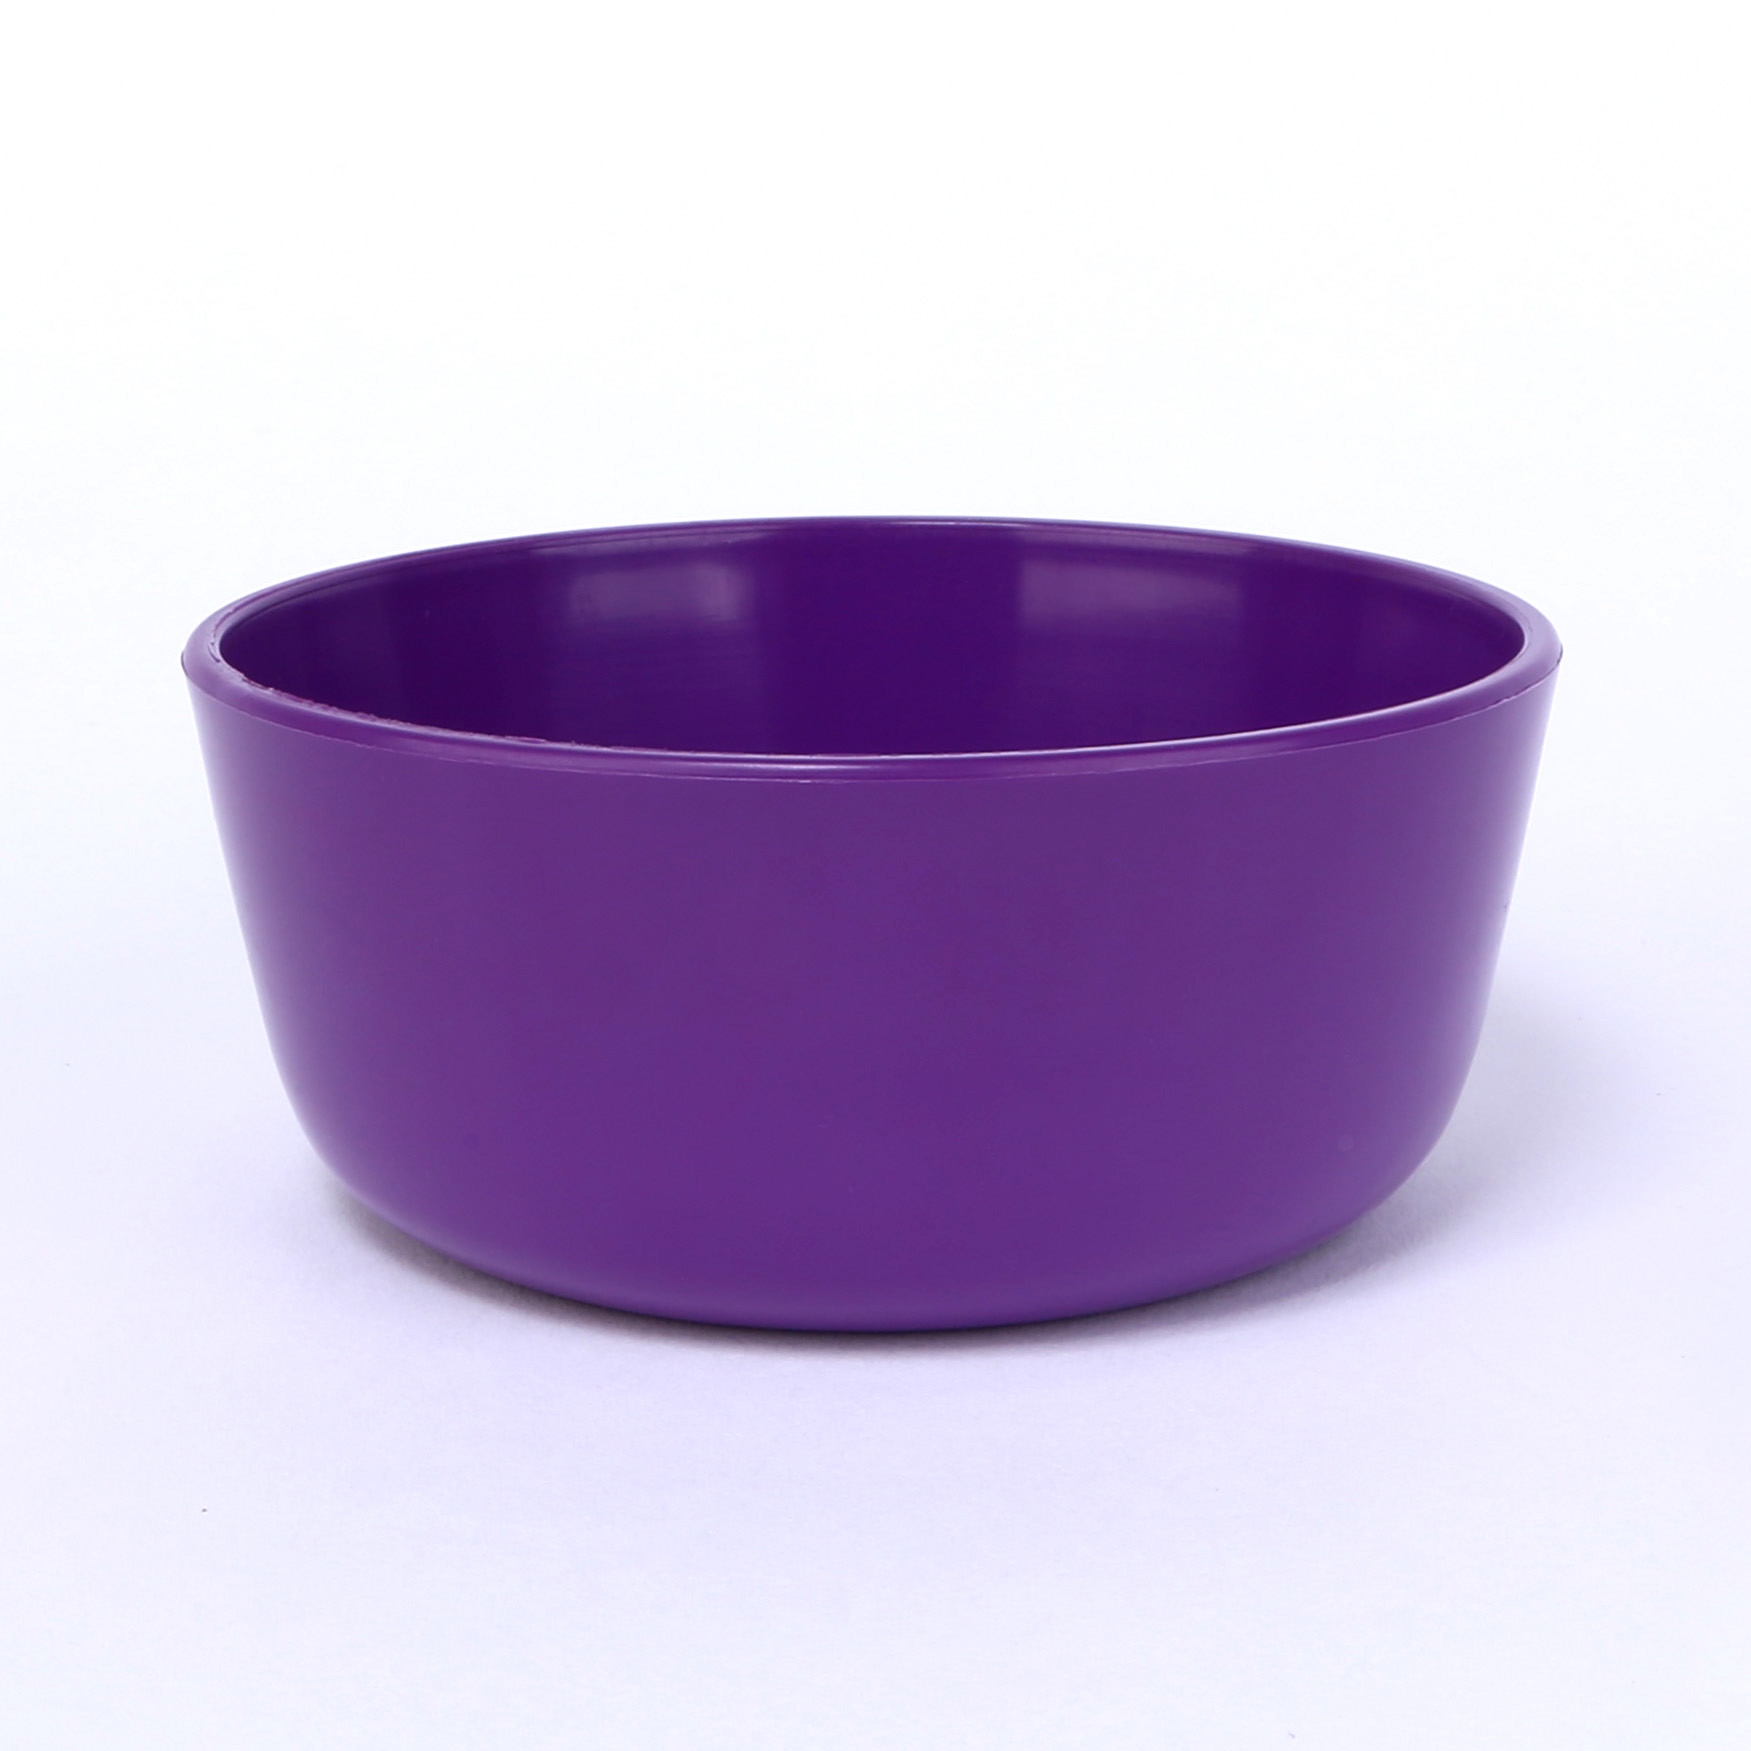 vaLon Zephyr hohe Dessertschale 11 cm aus schadstofffreiem Kunststoff in der Farbe lila.